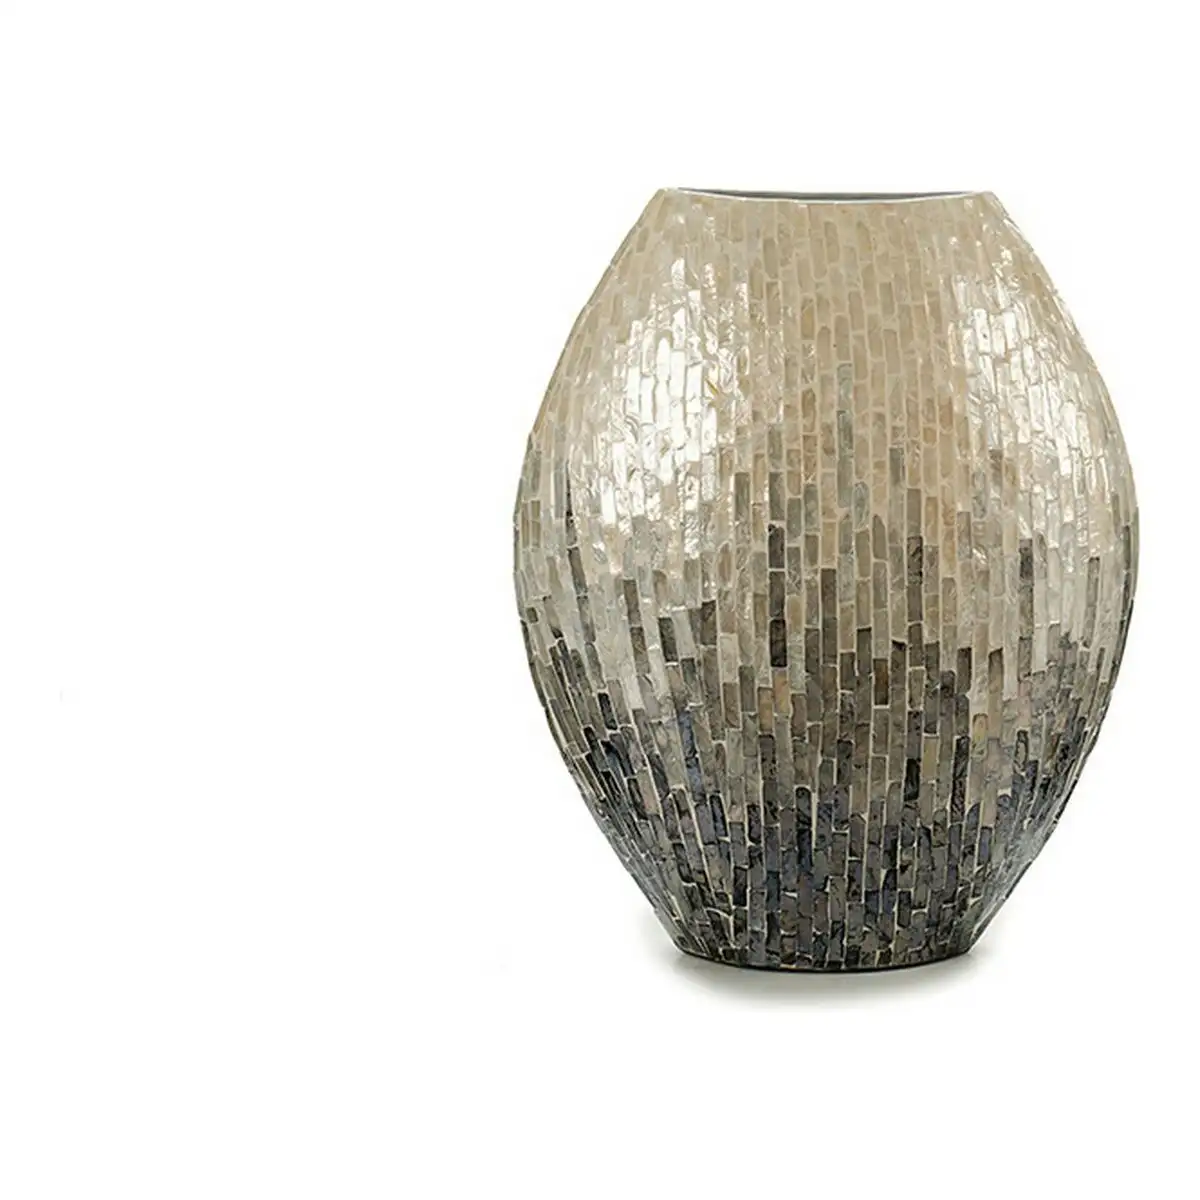 Vase bois gris nacre noire dm 18 x 44 5 x 40 cm _5624. DIAYTAR SENEGAL - L'Art de Choisir, l'Art de Vivre. Explorez notre univers de produits soigneusement sélectionnés pour vous offrir une expérience shopping riche et gratifiante.